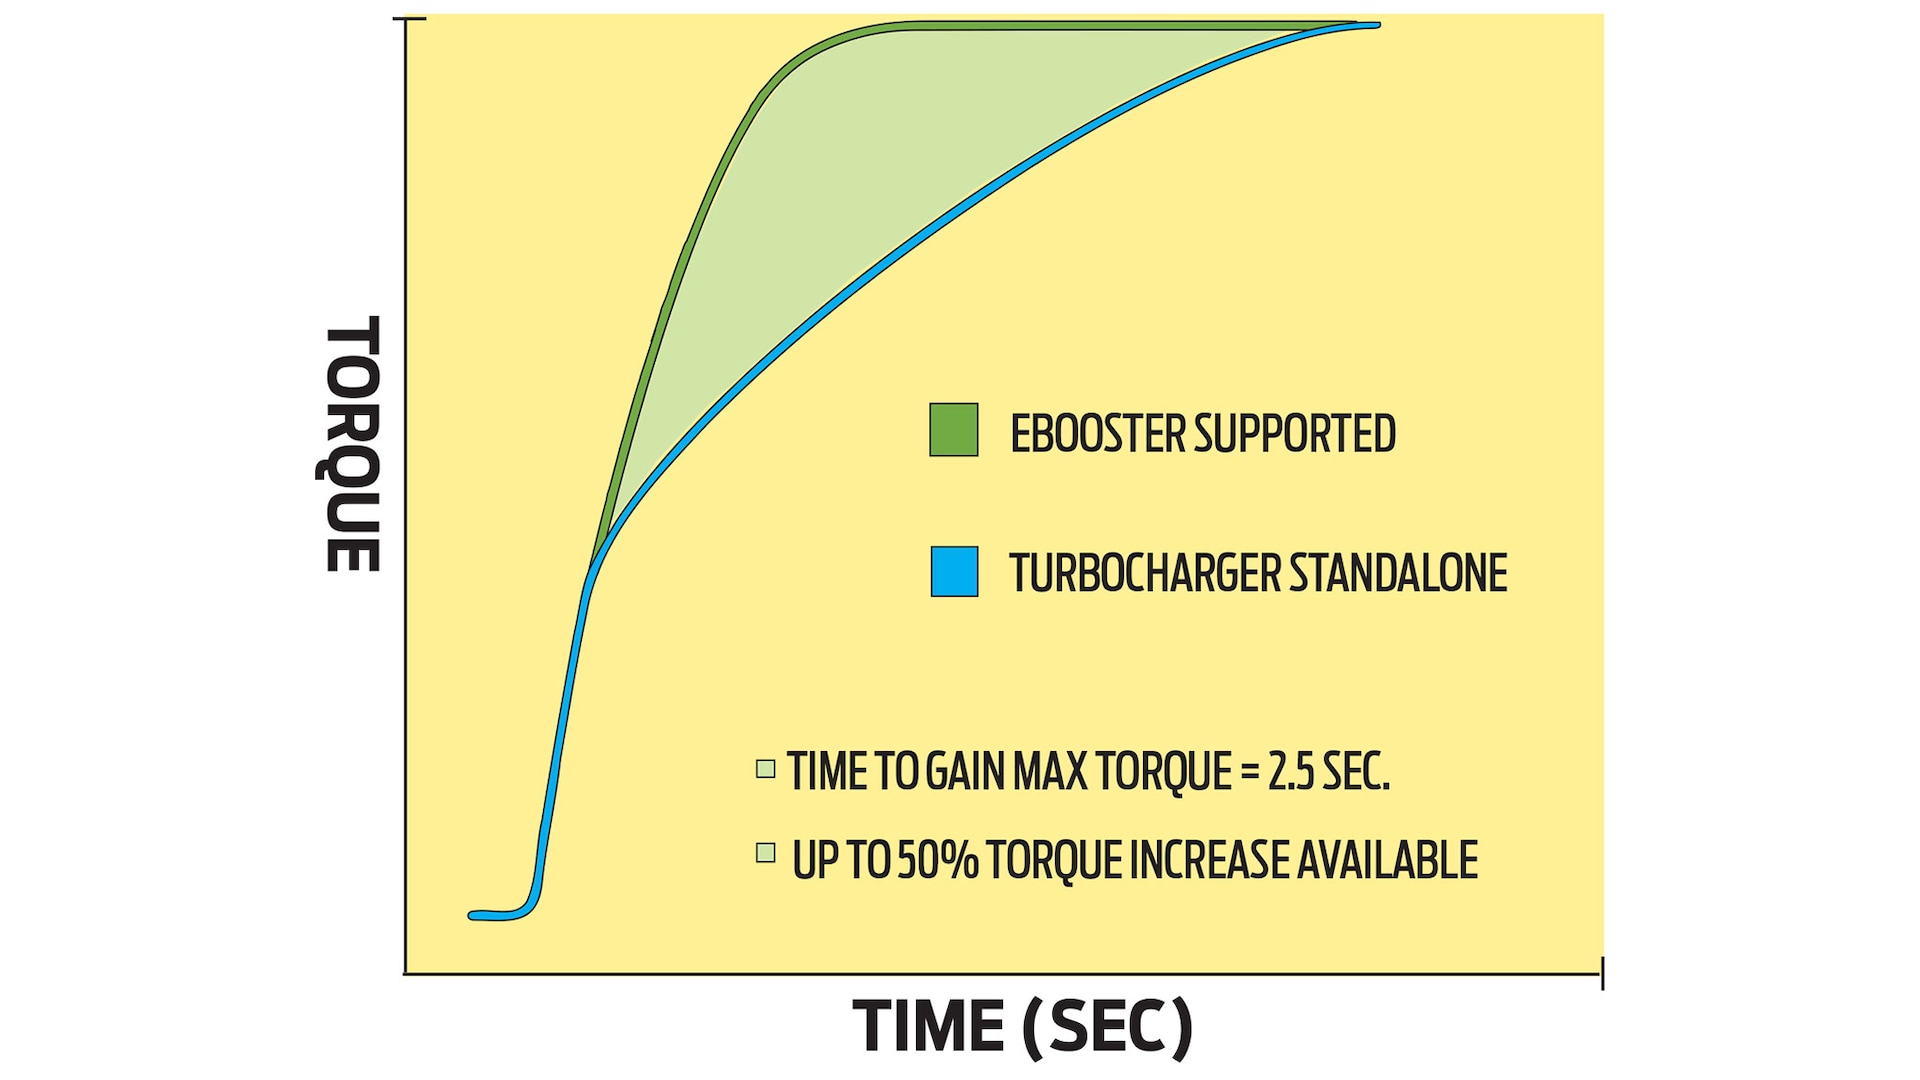 122 Borg Warner E Booster vs standard turbocharger graph